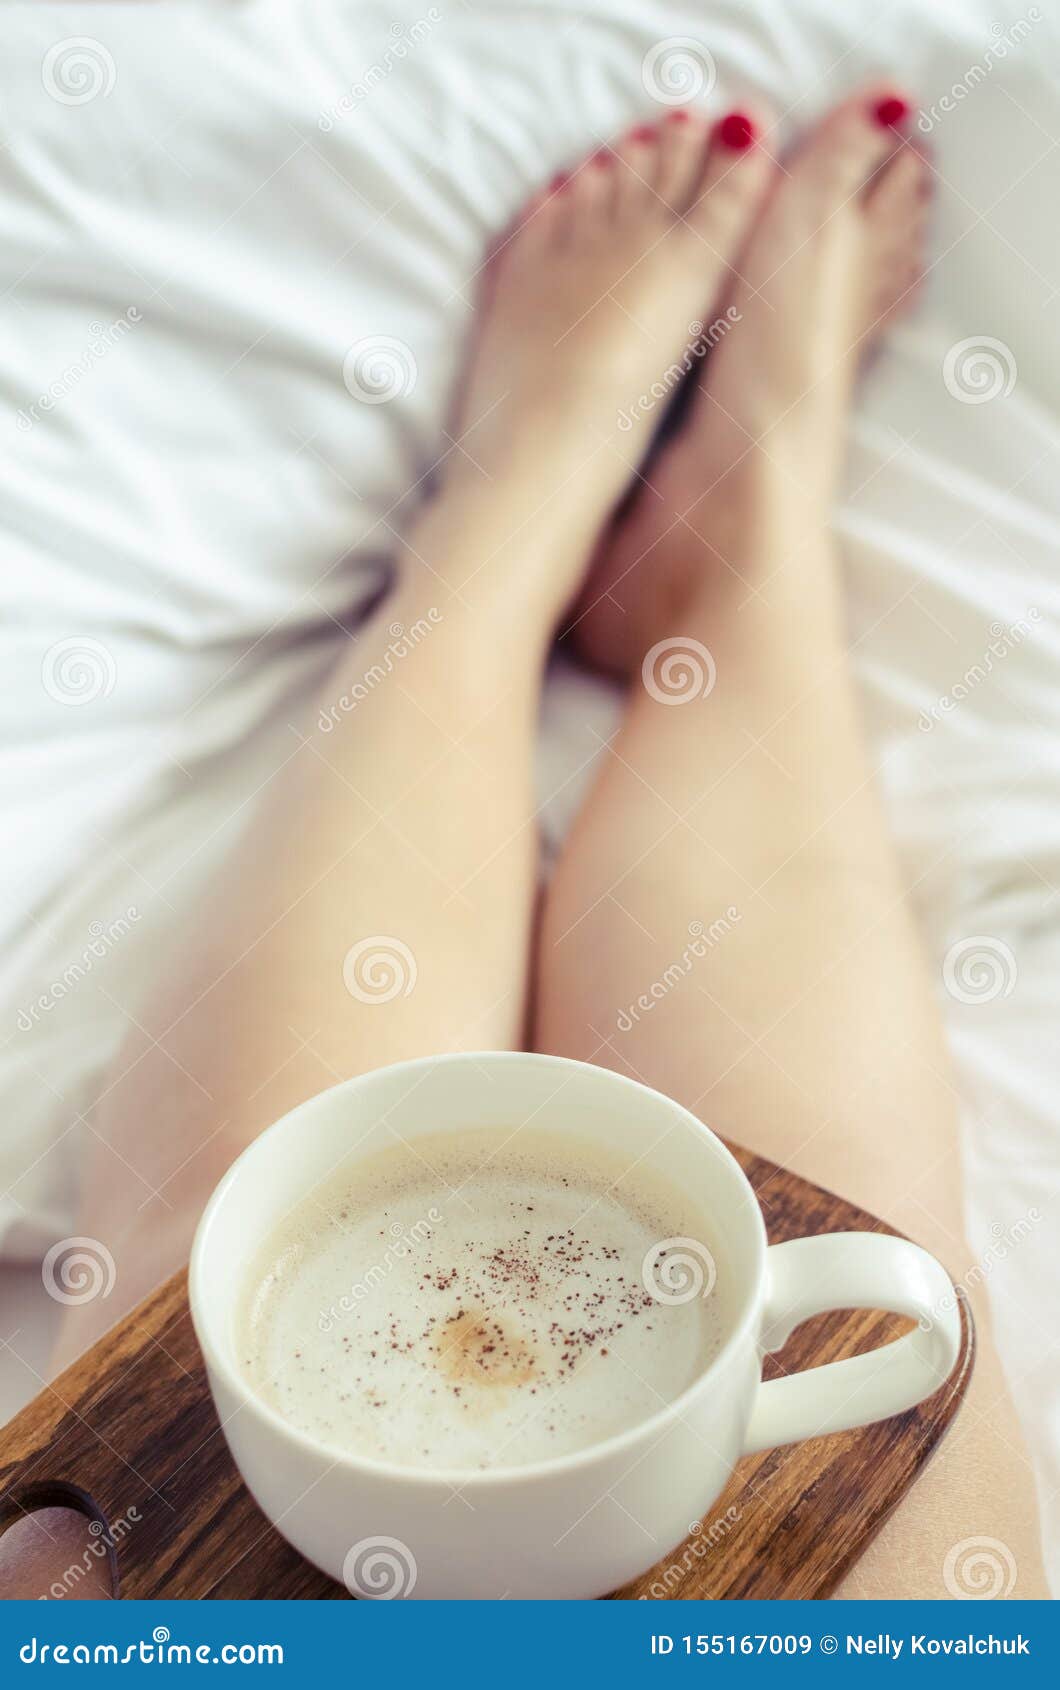 Guten morgen sexy kaffee